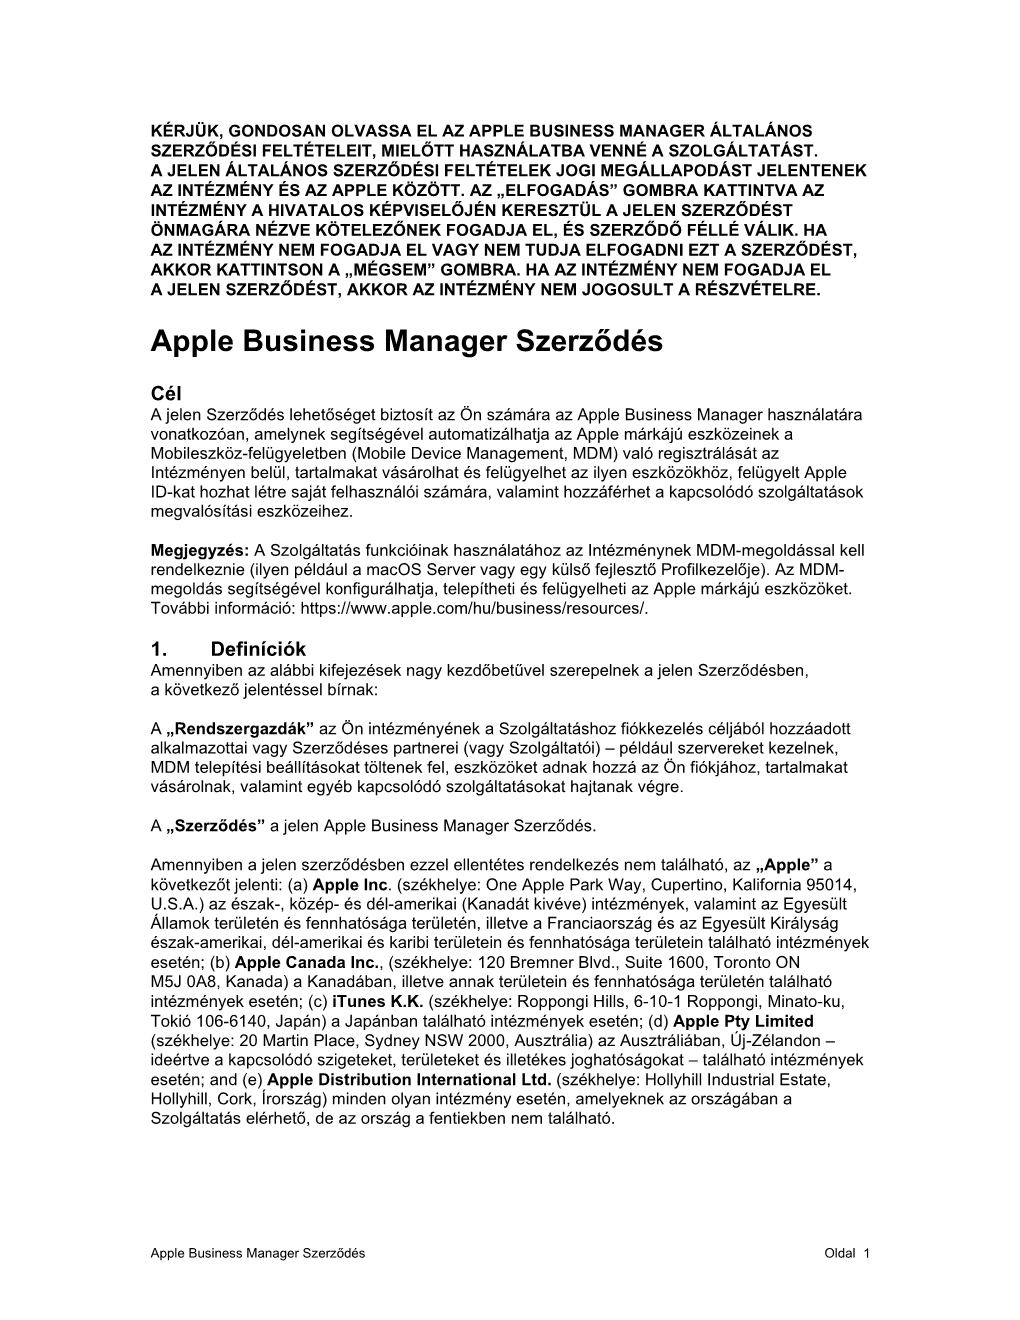 Apple Business Manager Szerződés